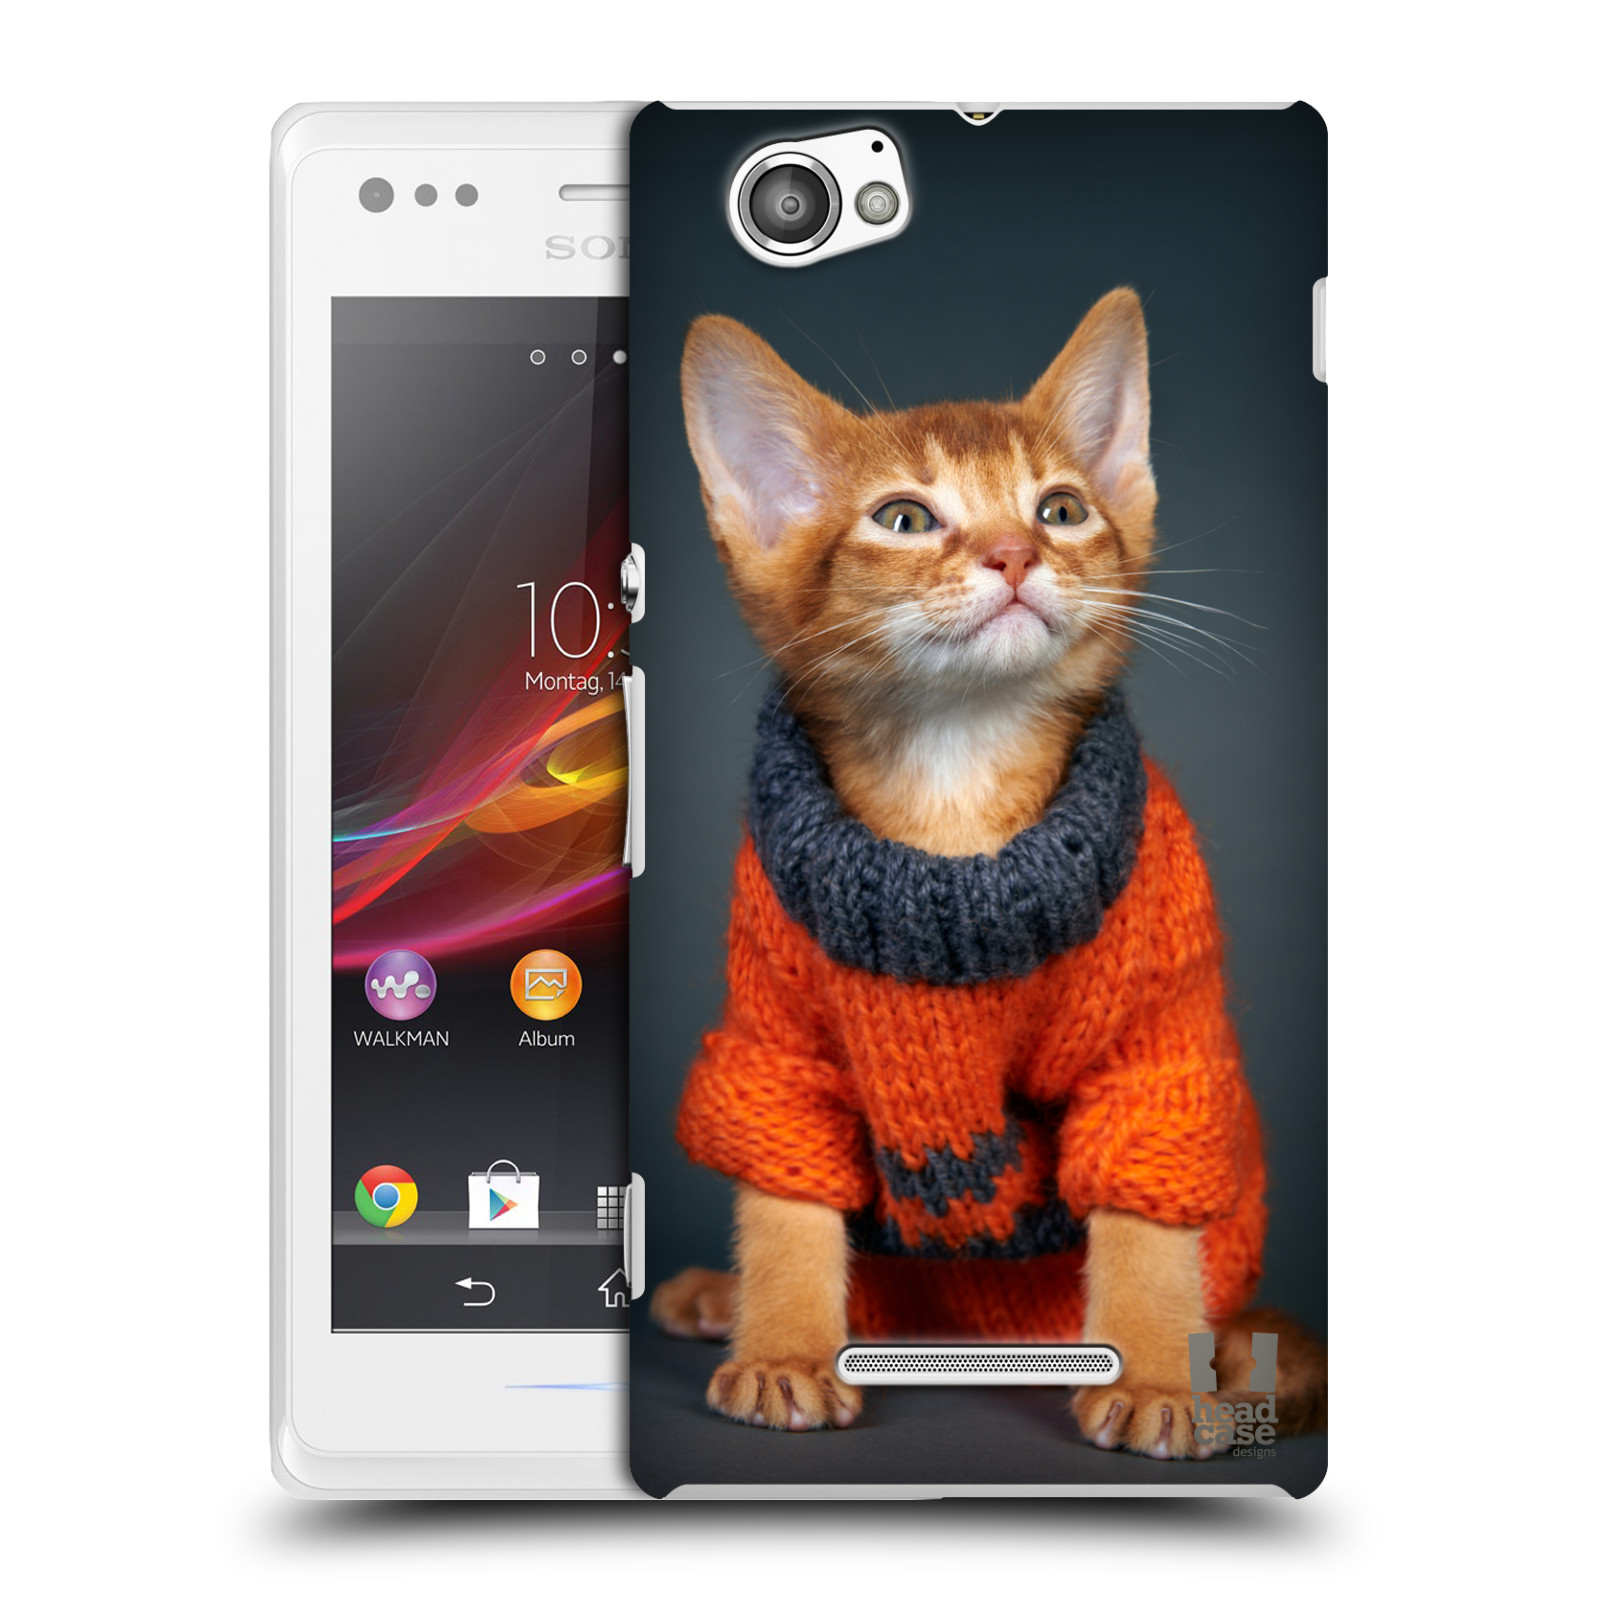 HEAD CASE plastový obal na mobil Sony Xperia M vzor Legrační zvířátka kočička v oranžovém svetru